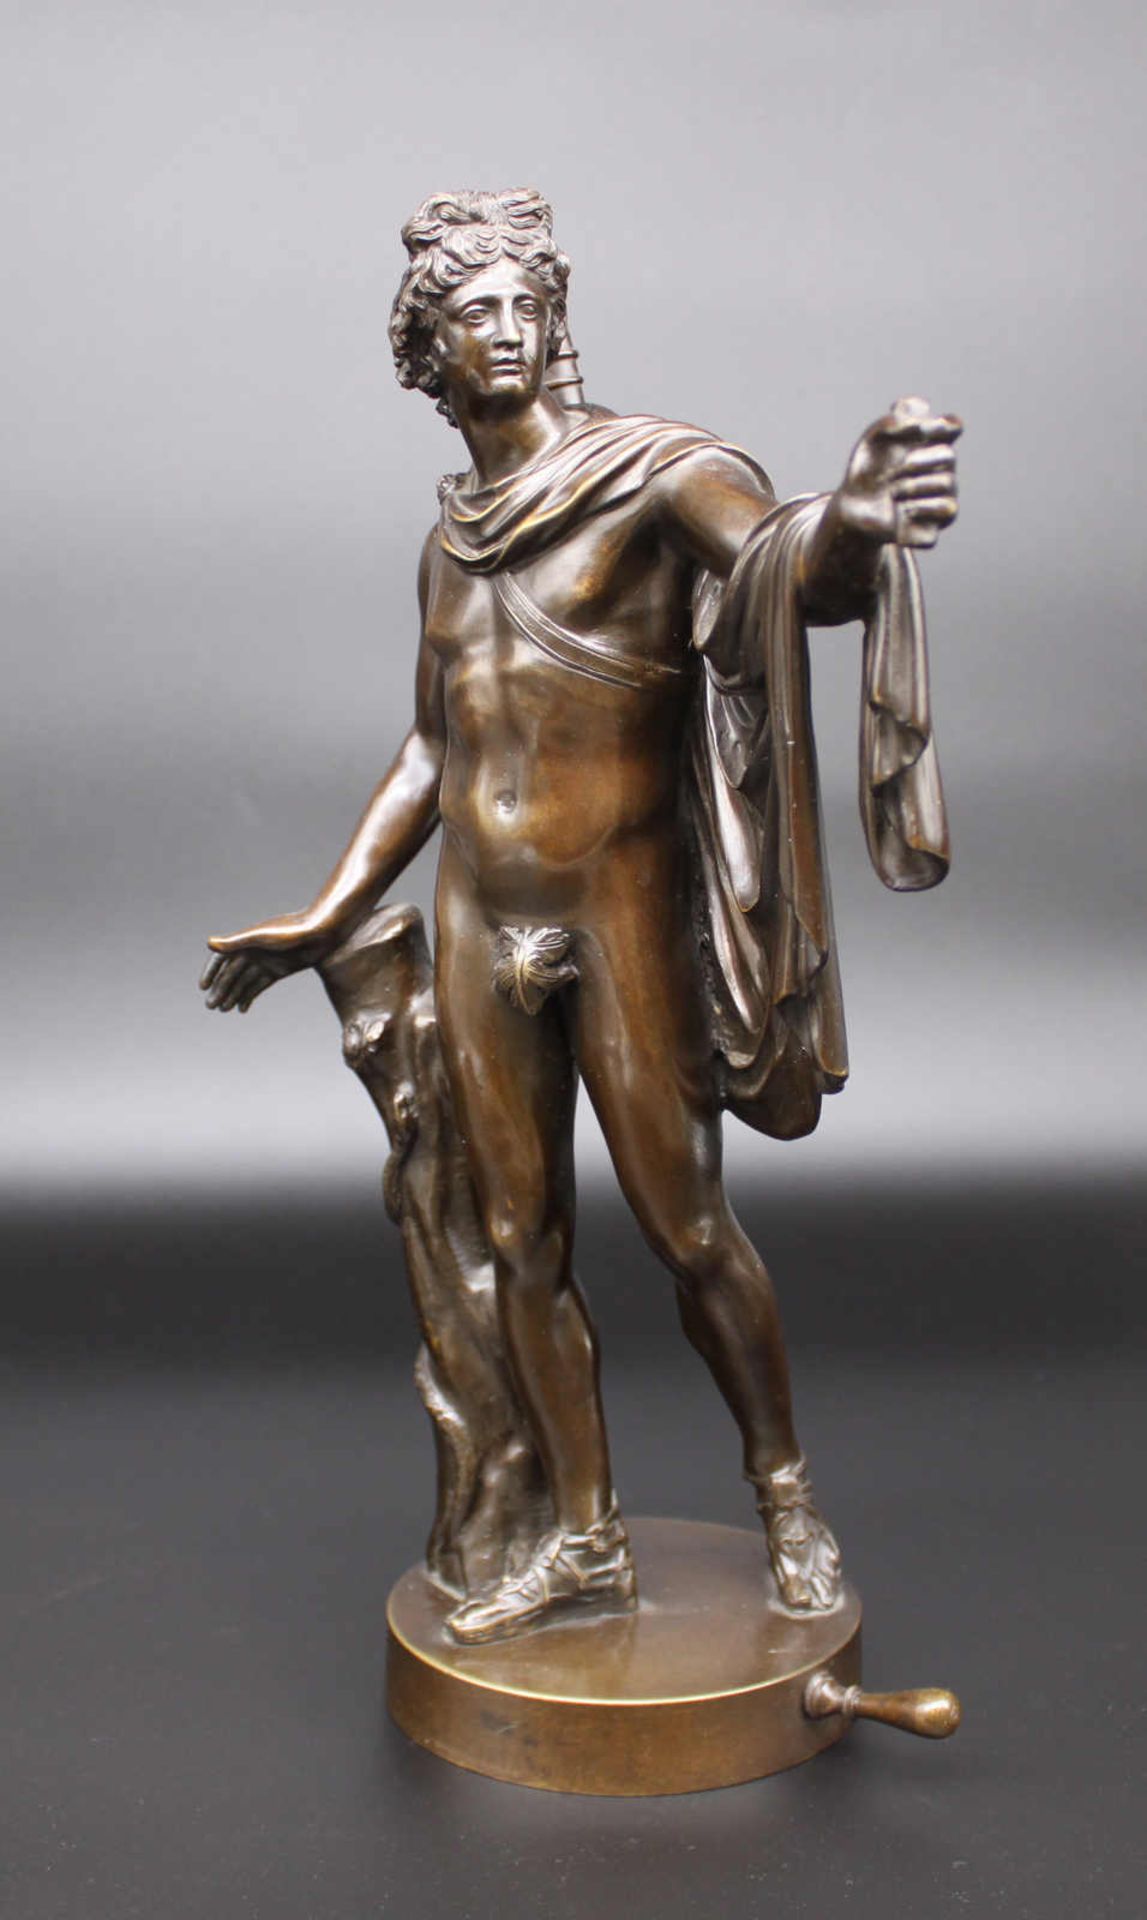 Apollon vom Belvedere, Grand-Tour-Objekt. Italienisches Grand Tour Objekt, Datierung um 1900/20,